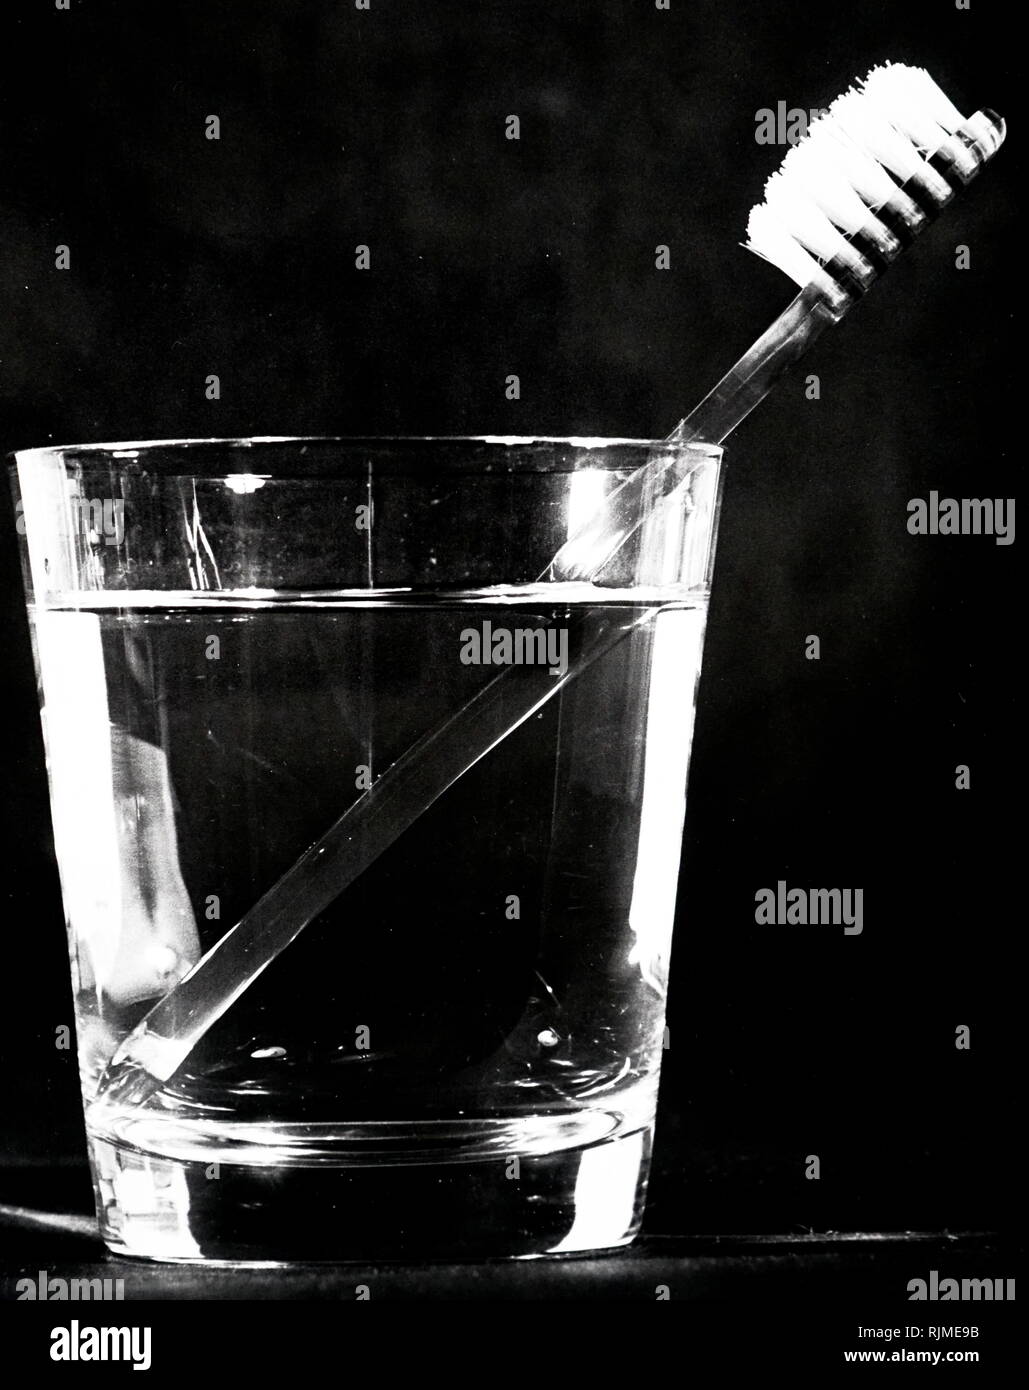 Rifratto immagine di una impugnatura dello spazzolino da denti come si vede in un bicchiere di acqua Foto Stock